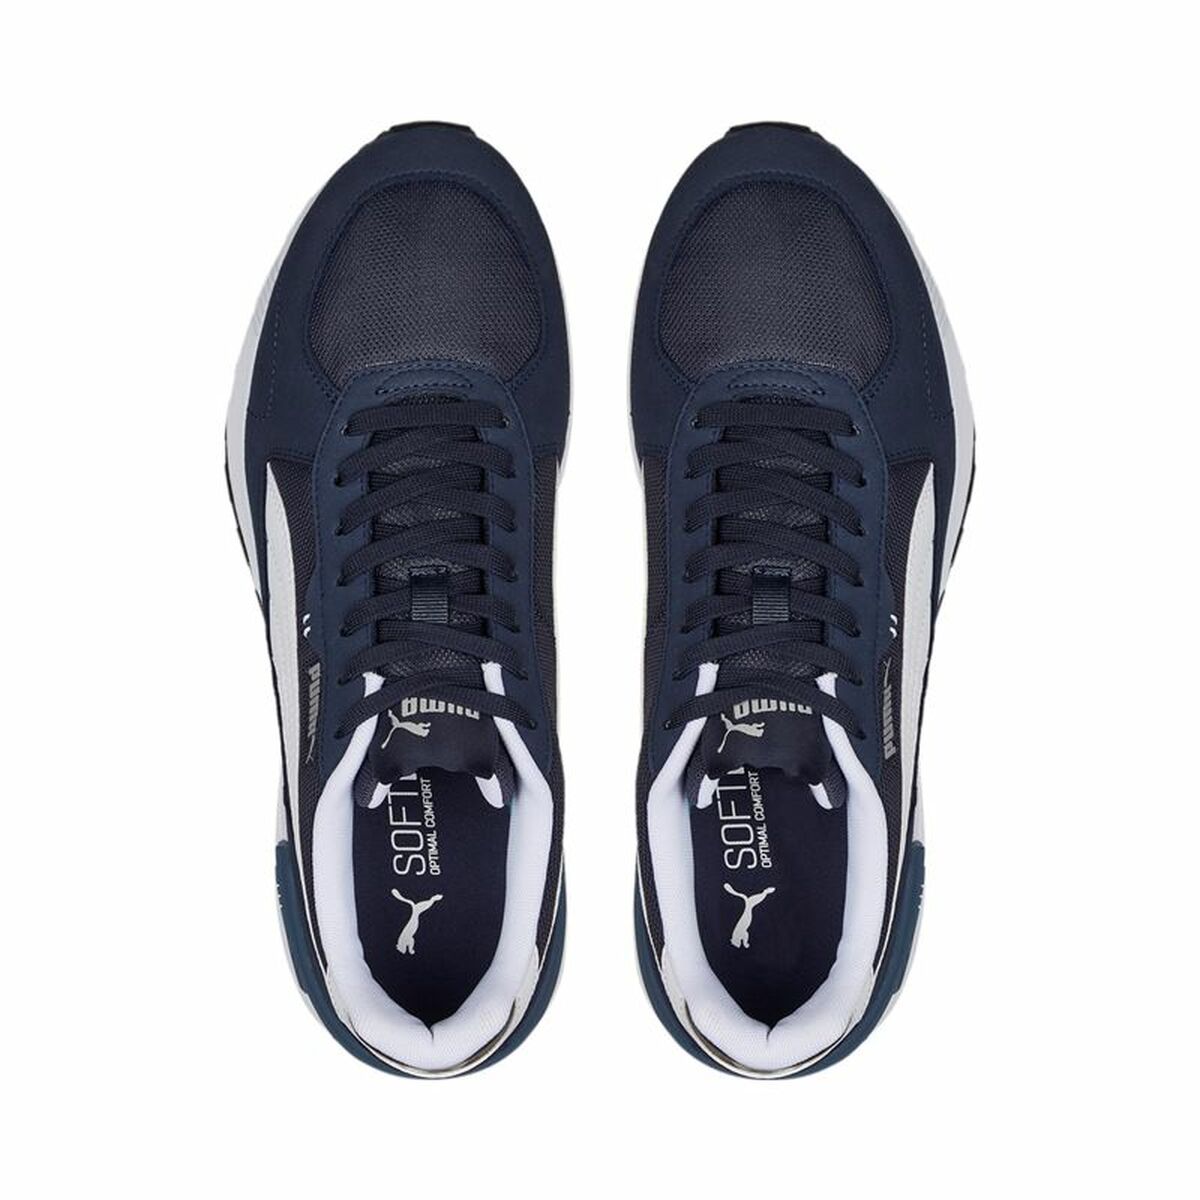 Chaussures de sport pour femme Puma Graviton Blue marine